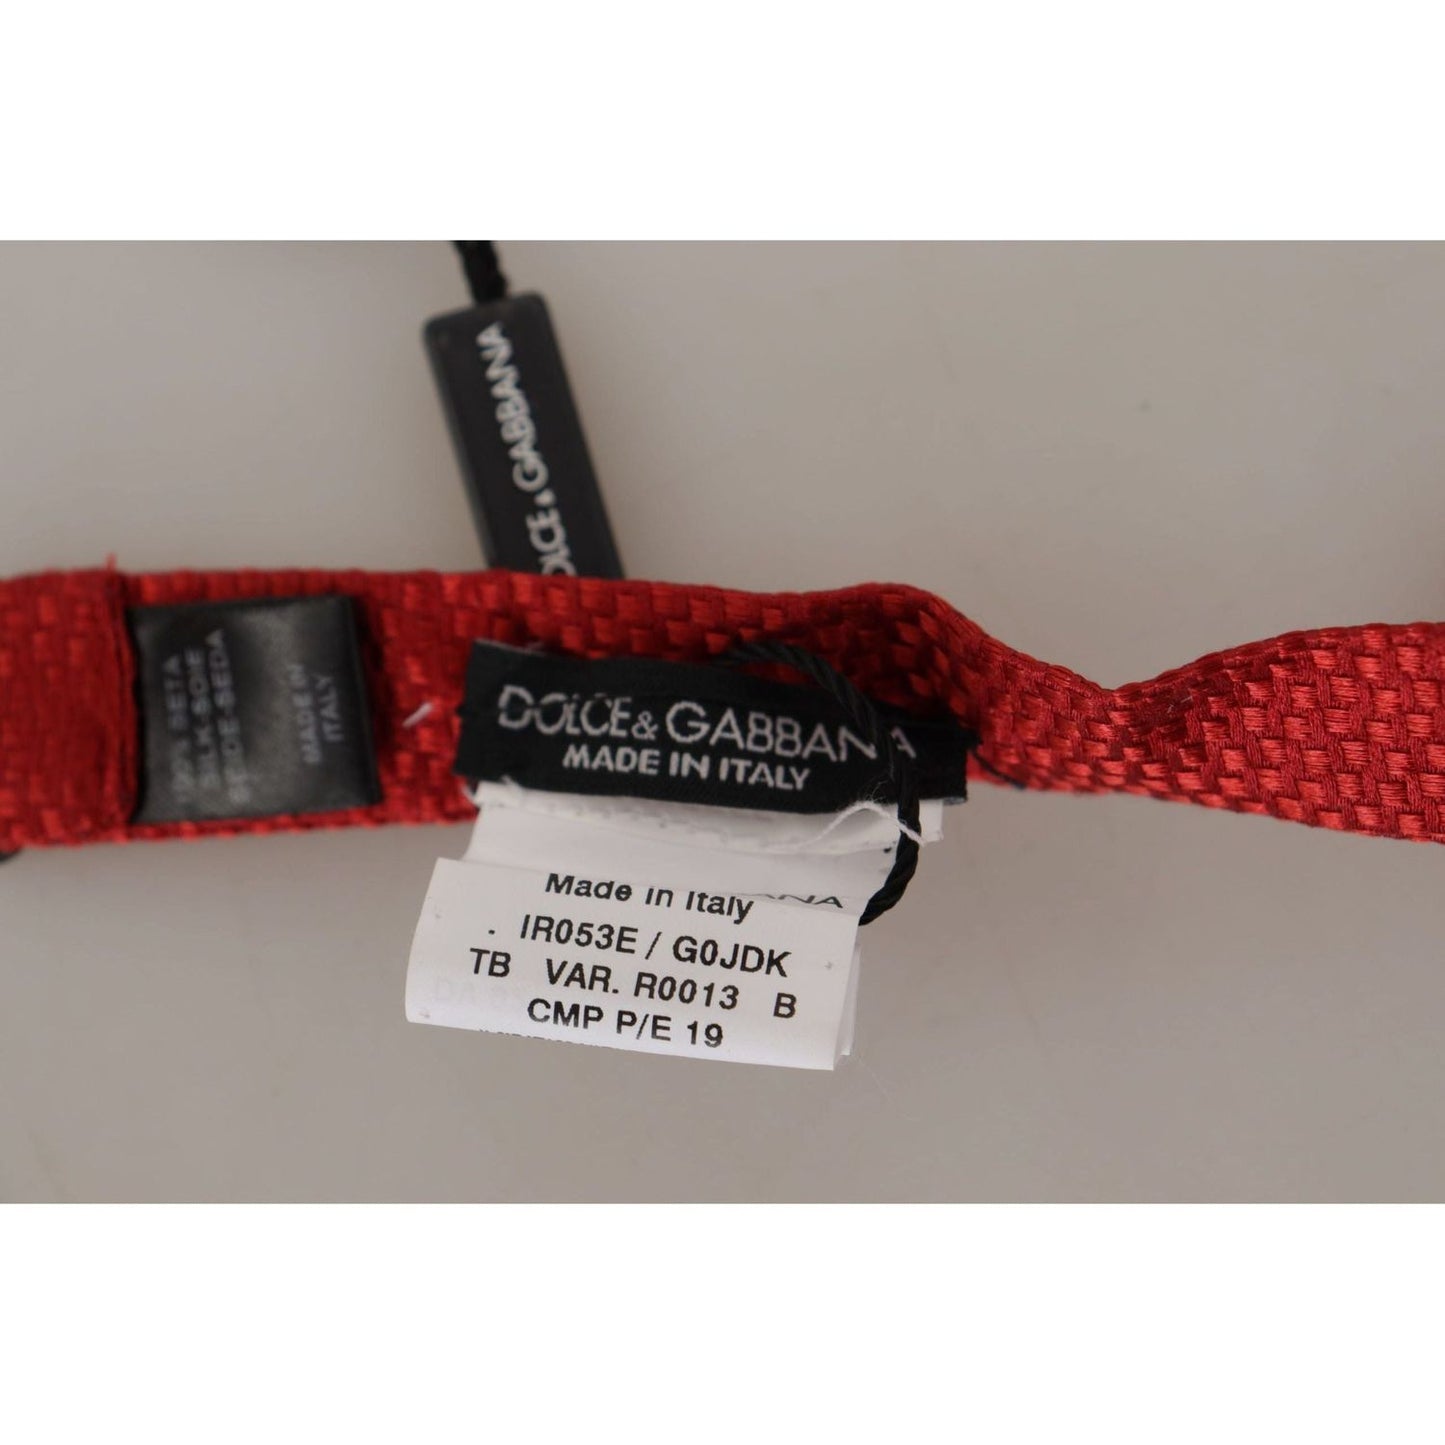 Elegant Red Silk Bow Tie Dolce & Gabbana